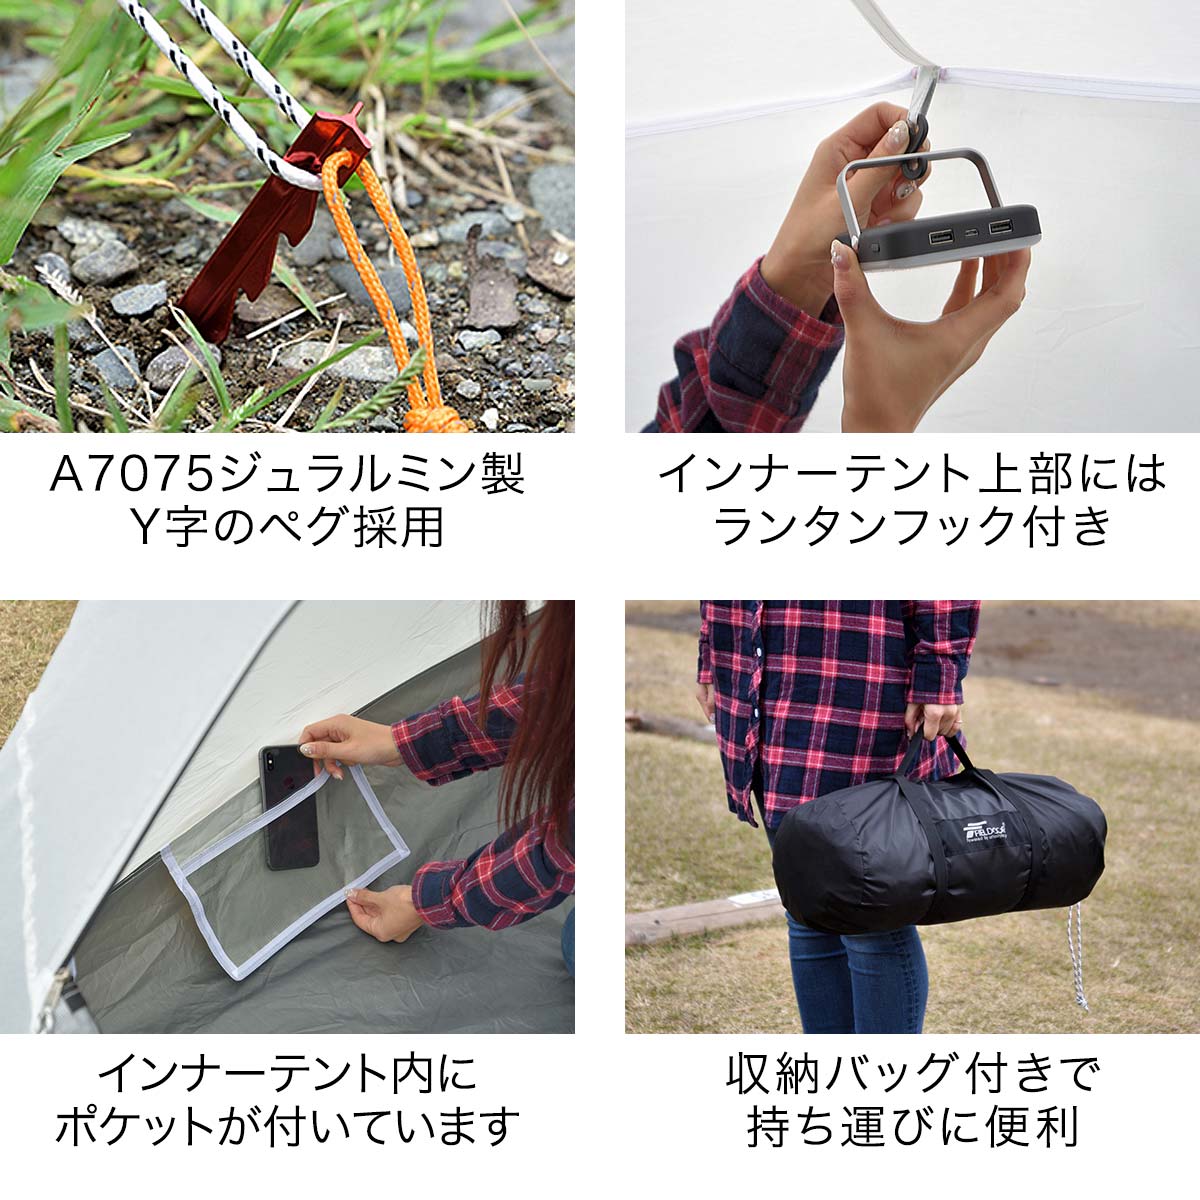 楽天市場】【楽天1位】テント 2人用 ドームテント UVカット ドーム型